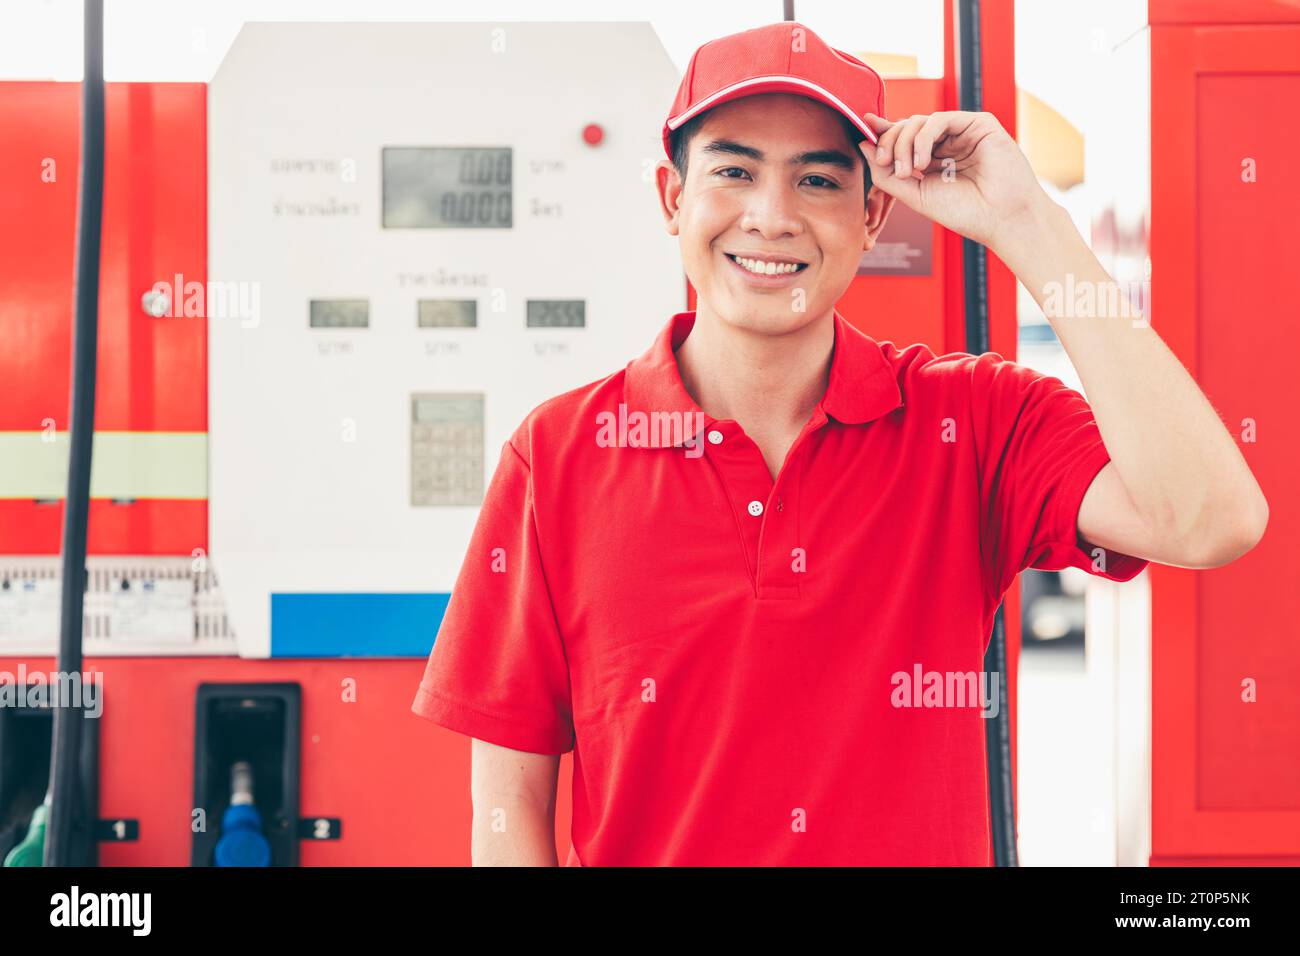 Portrait personnel de service de station d'essence travailleur masculin asiatique heureux souriant travail de service de remplissage d'essence de voiture. Banque D'Images